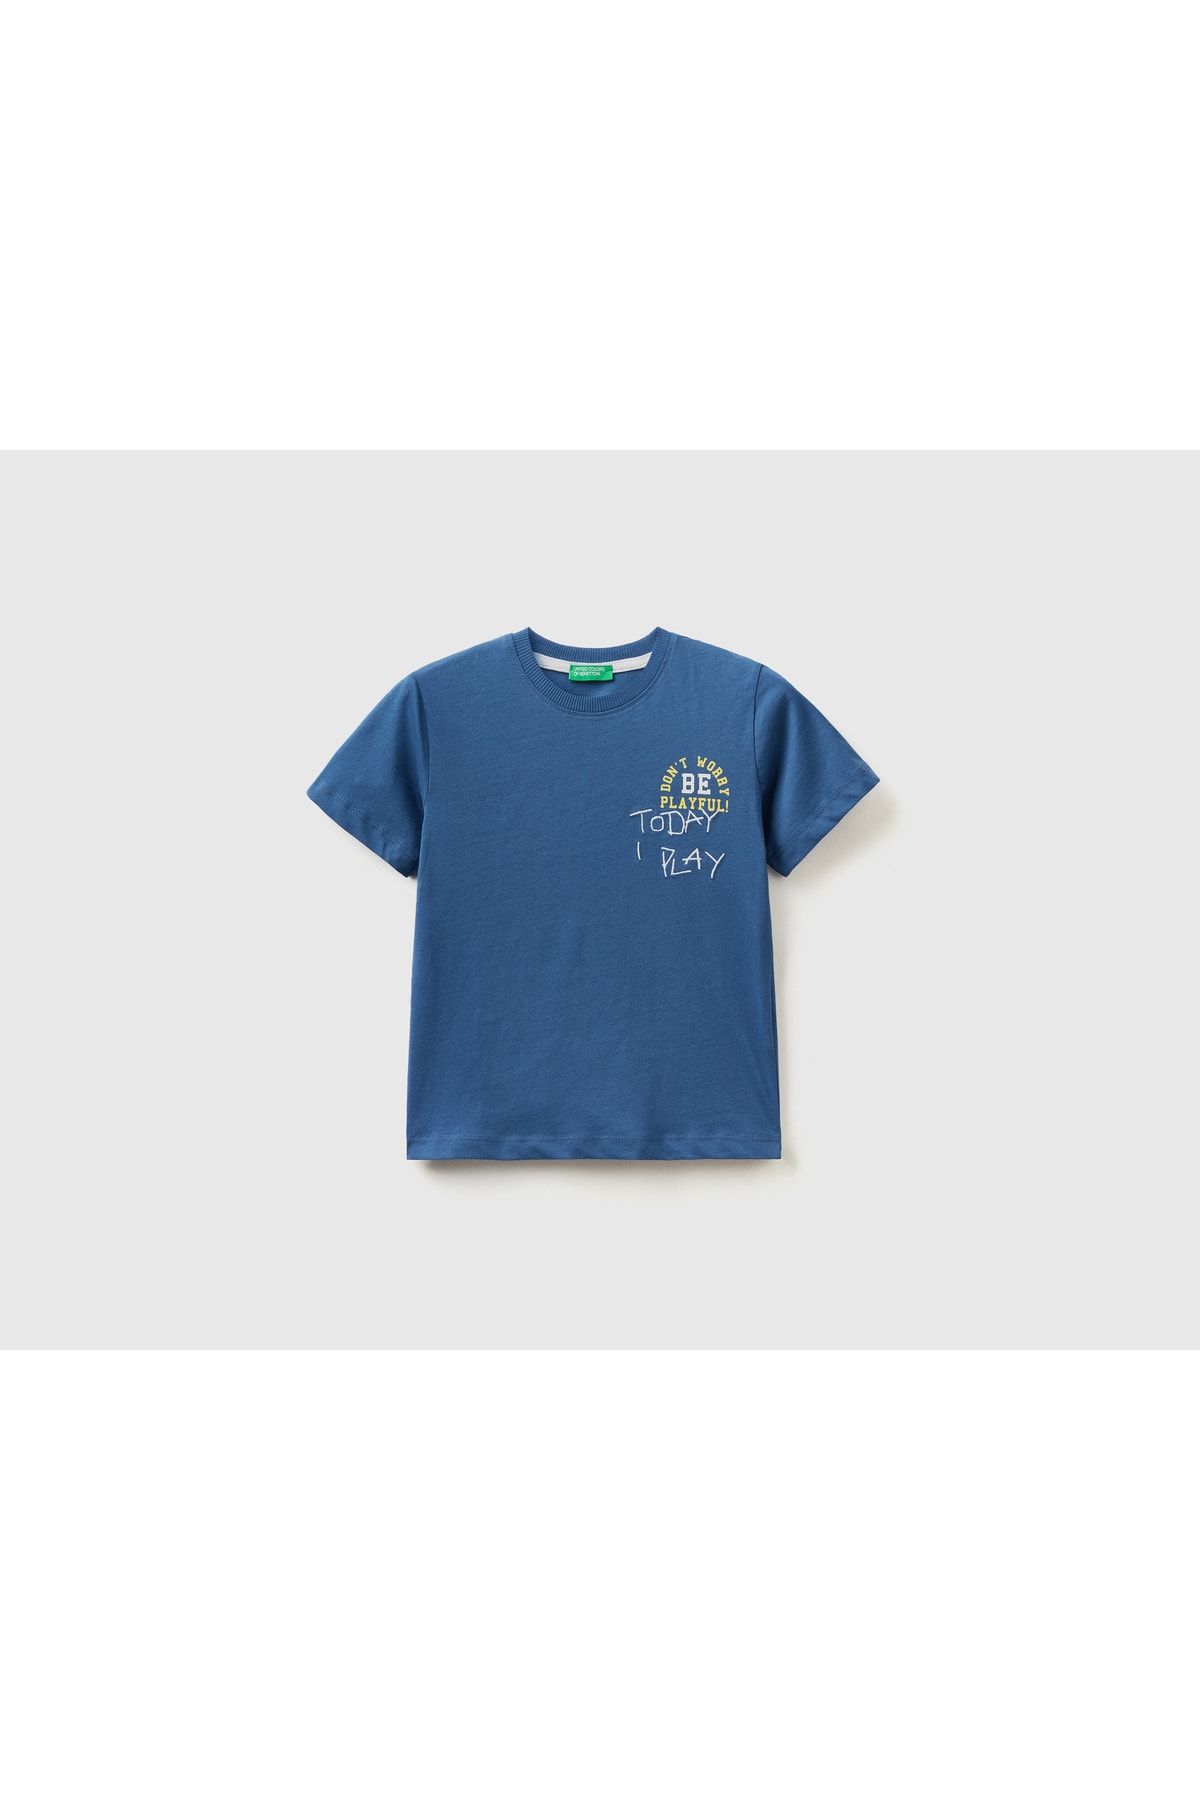 United Colors of Benetton Erkek Çocuk Saks Mavi Renkli Slogan Baskılı T-shirt Saks Mavi